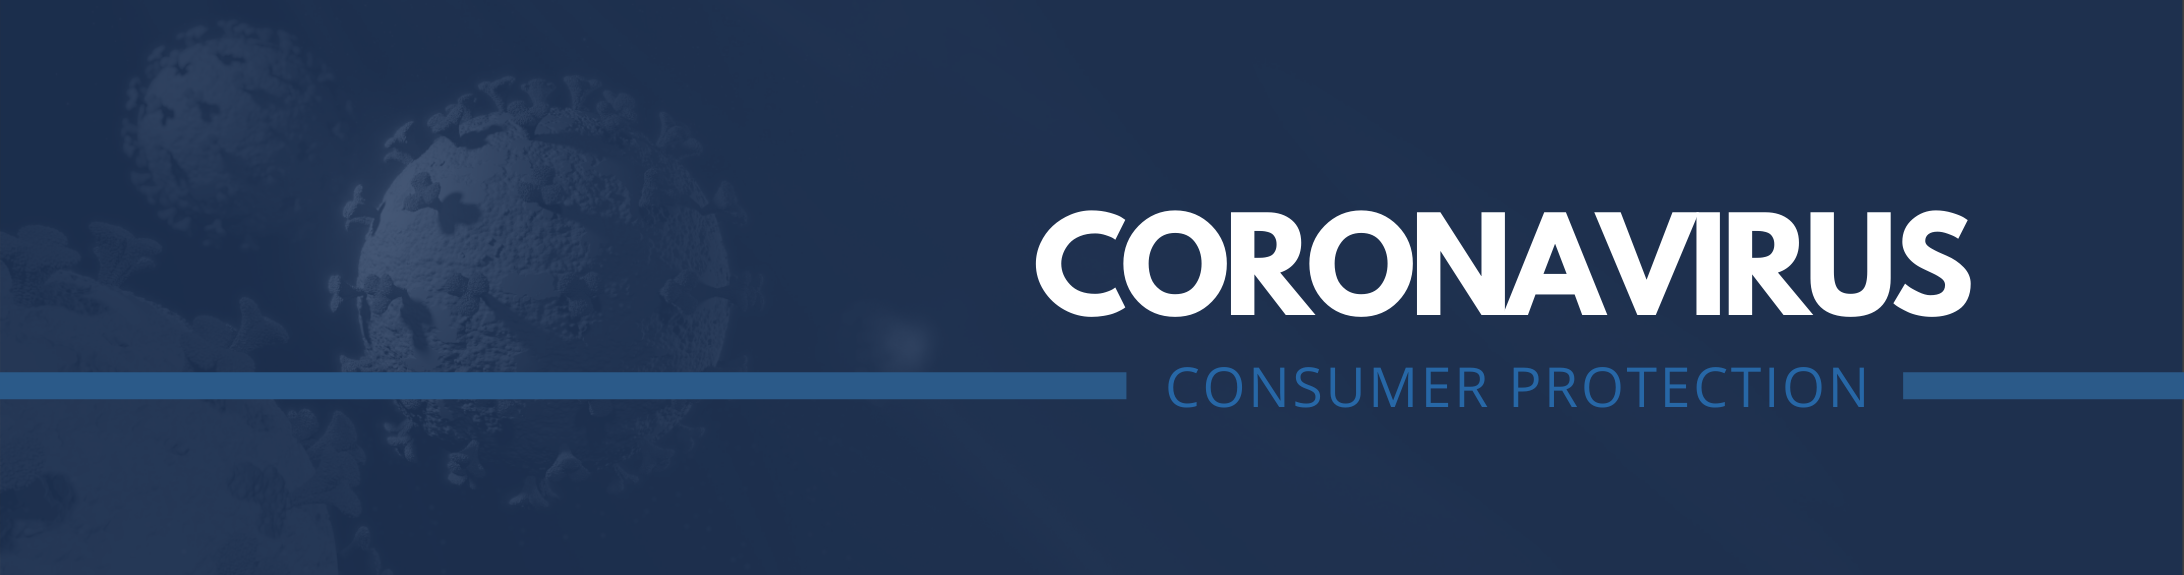 Coronavirus Consumer Protection Banner